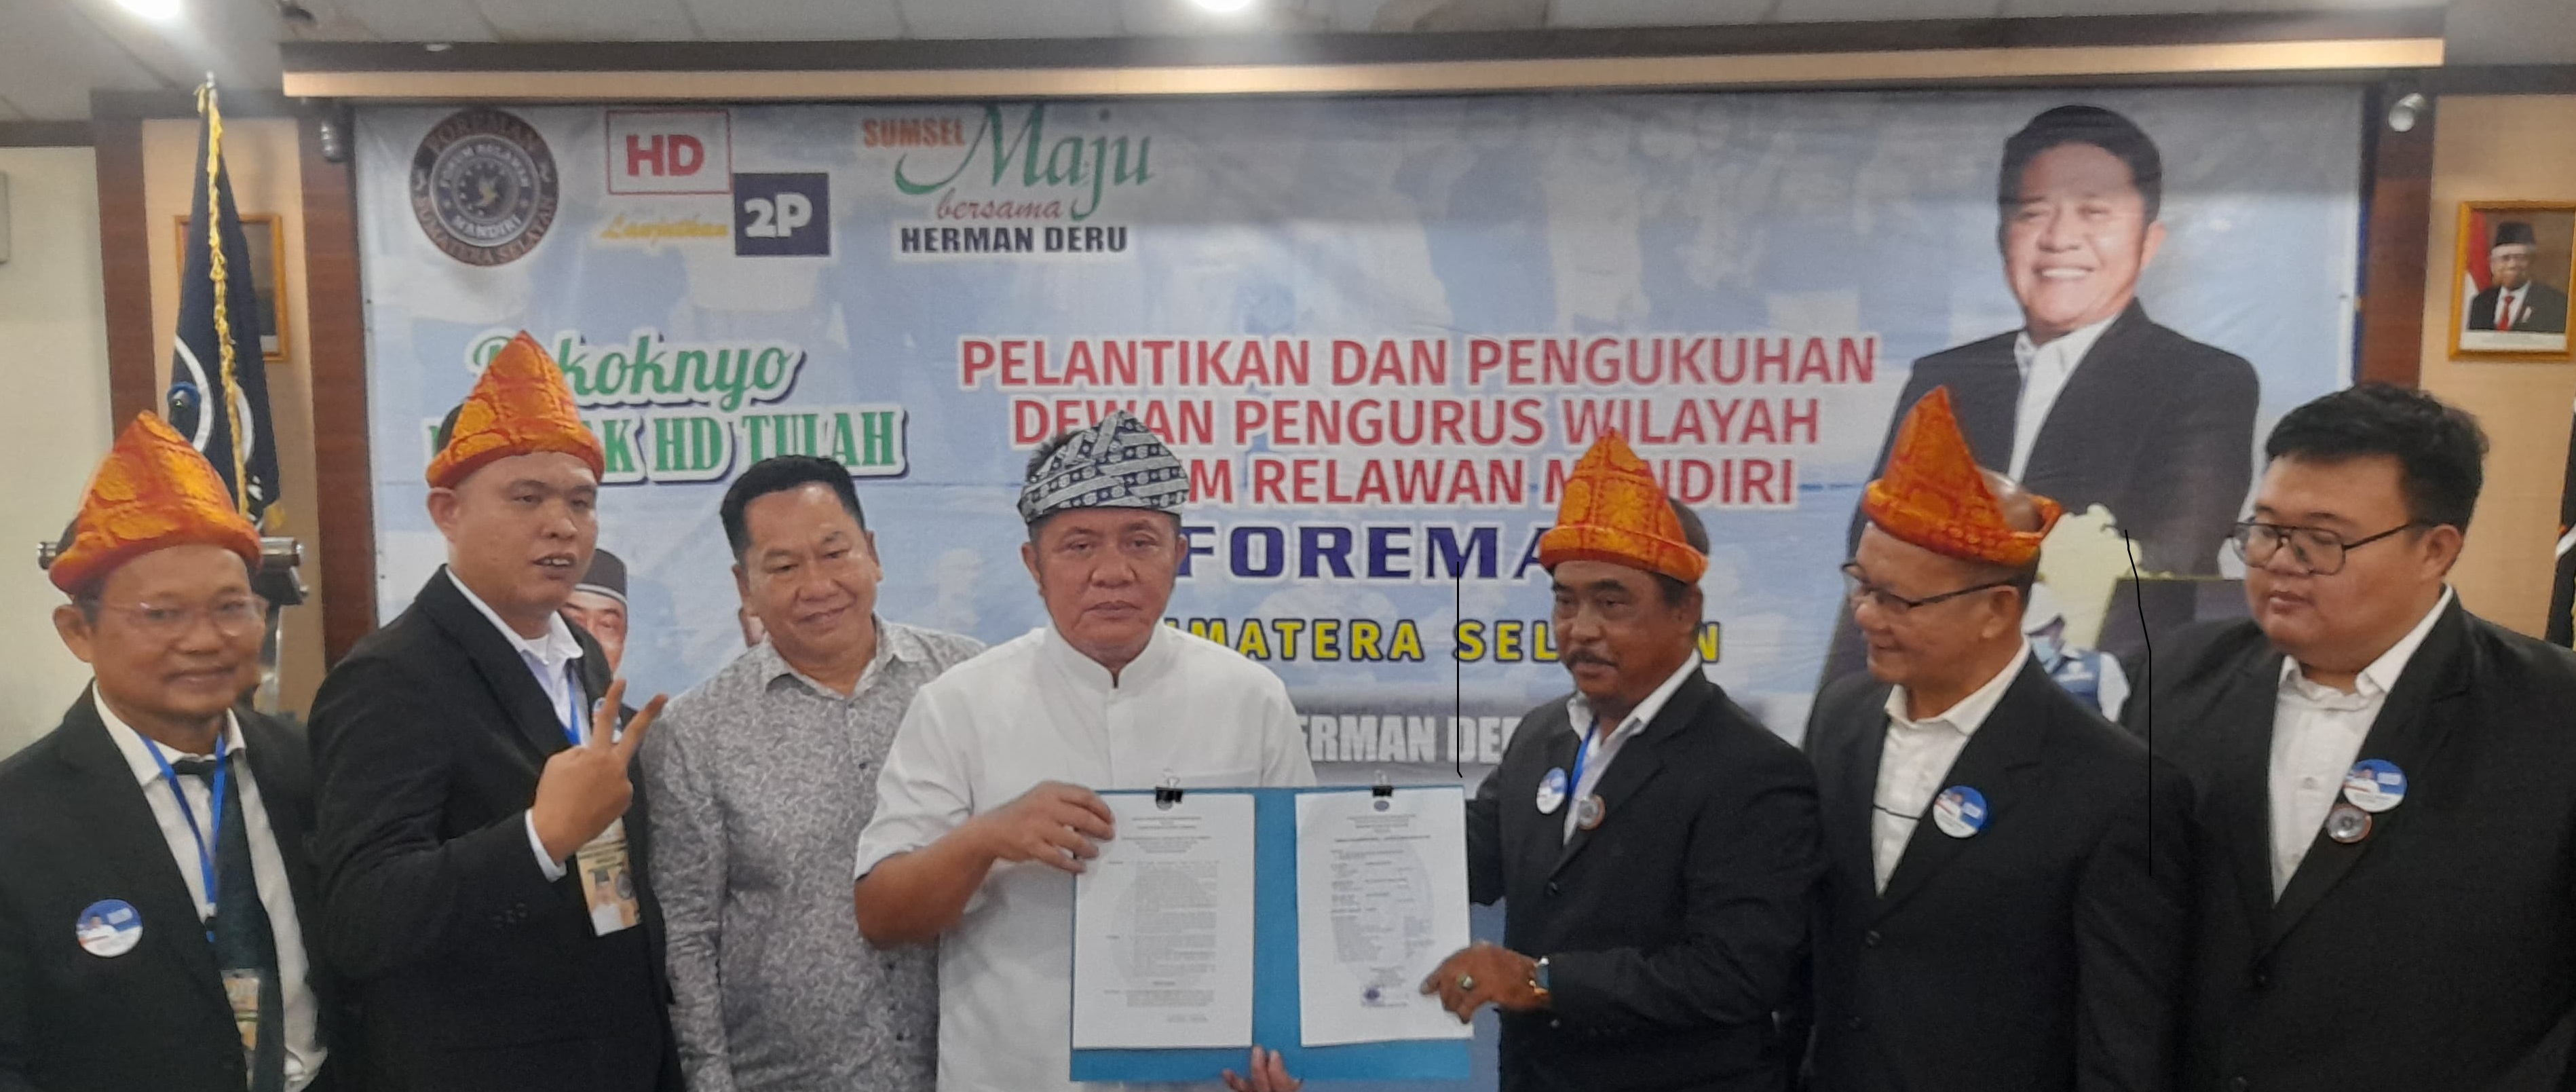 Calon Gubernur Sumsel Herman Deru Dukung Tim Relawan Foreman Sumsel: Galang Dukungan Menuju Kemenangan